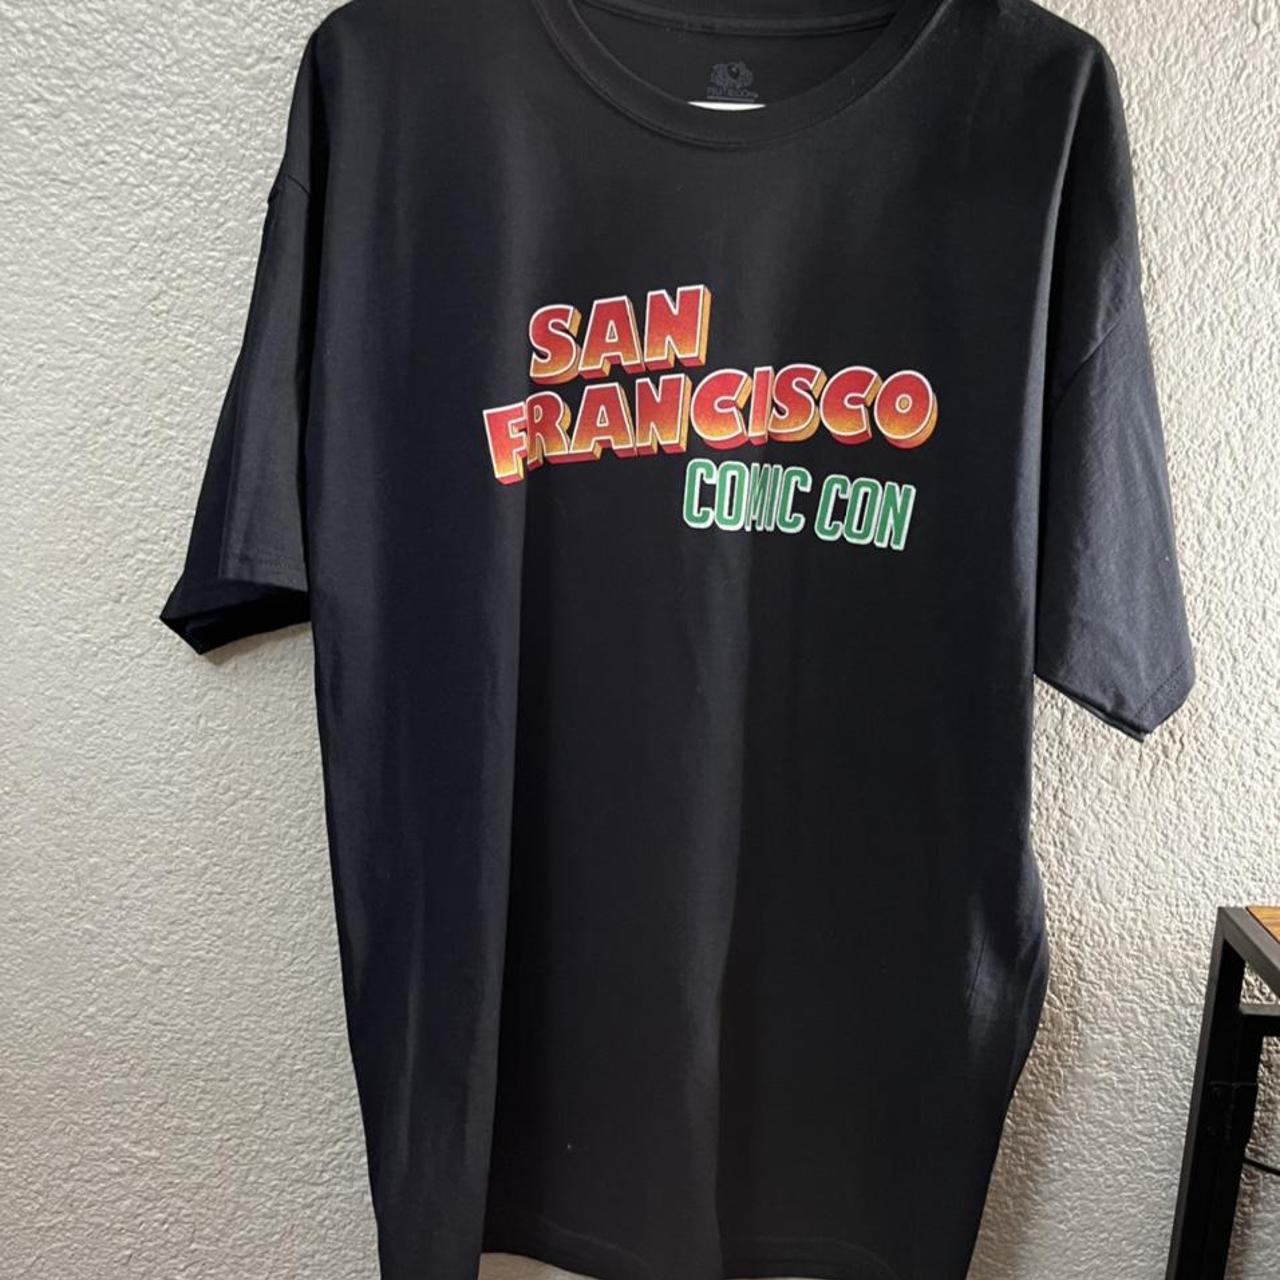 San Francisco Comic Con shirt Size XL - Depop